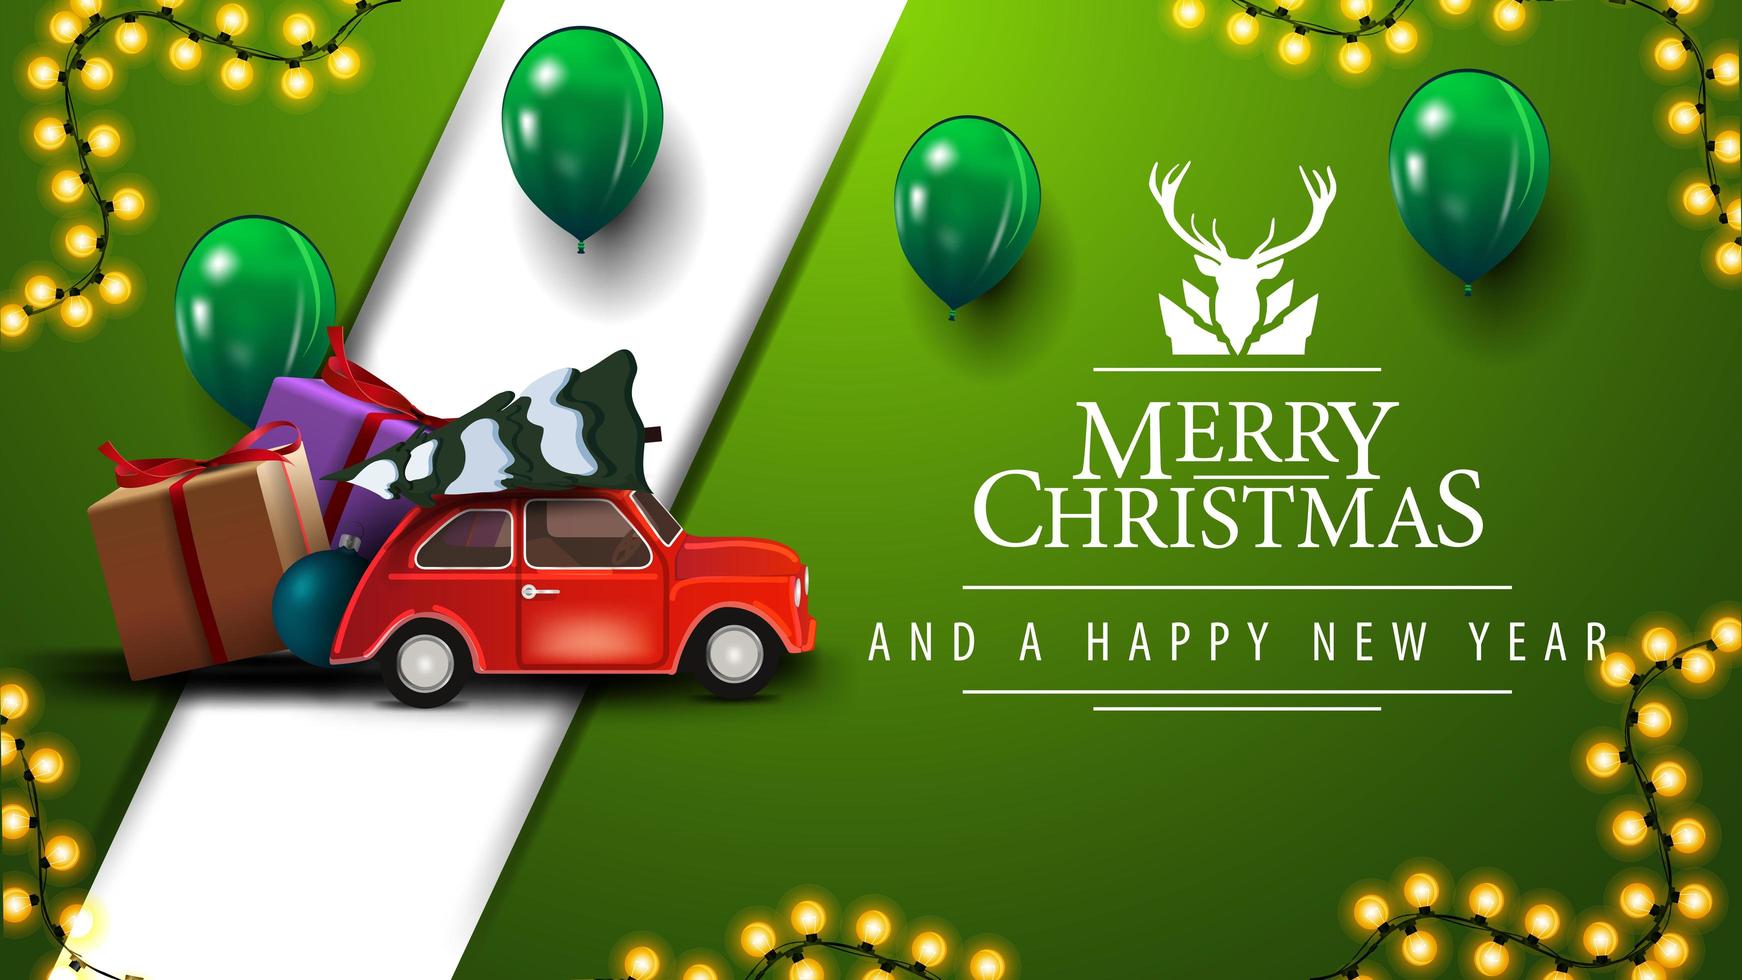 god jul, grönt vykort med kransar, ballonger, hälsningslogotyp med rådjur och röd veteranbil som bär julgran vektor